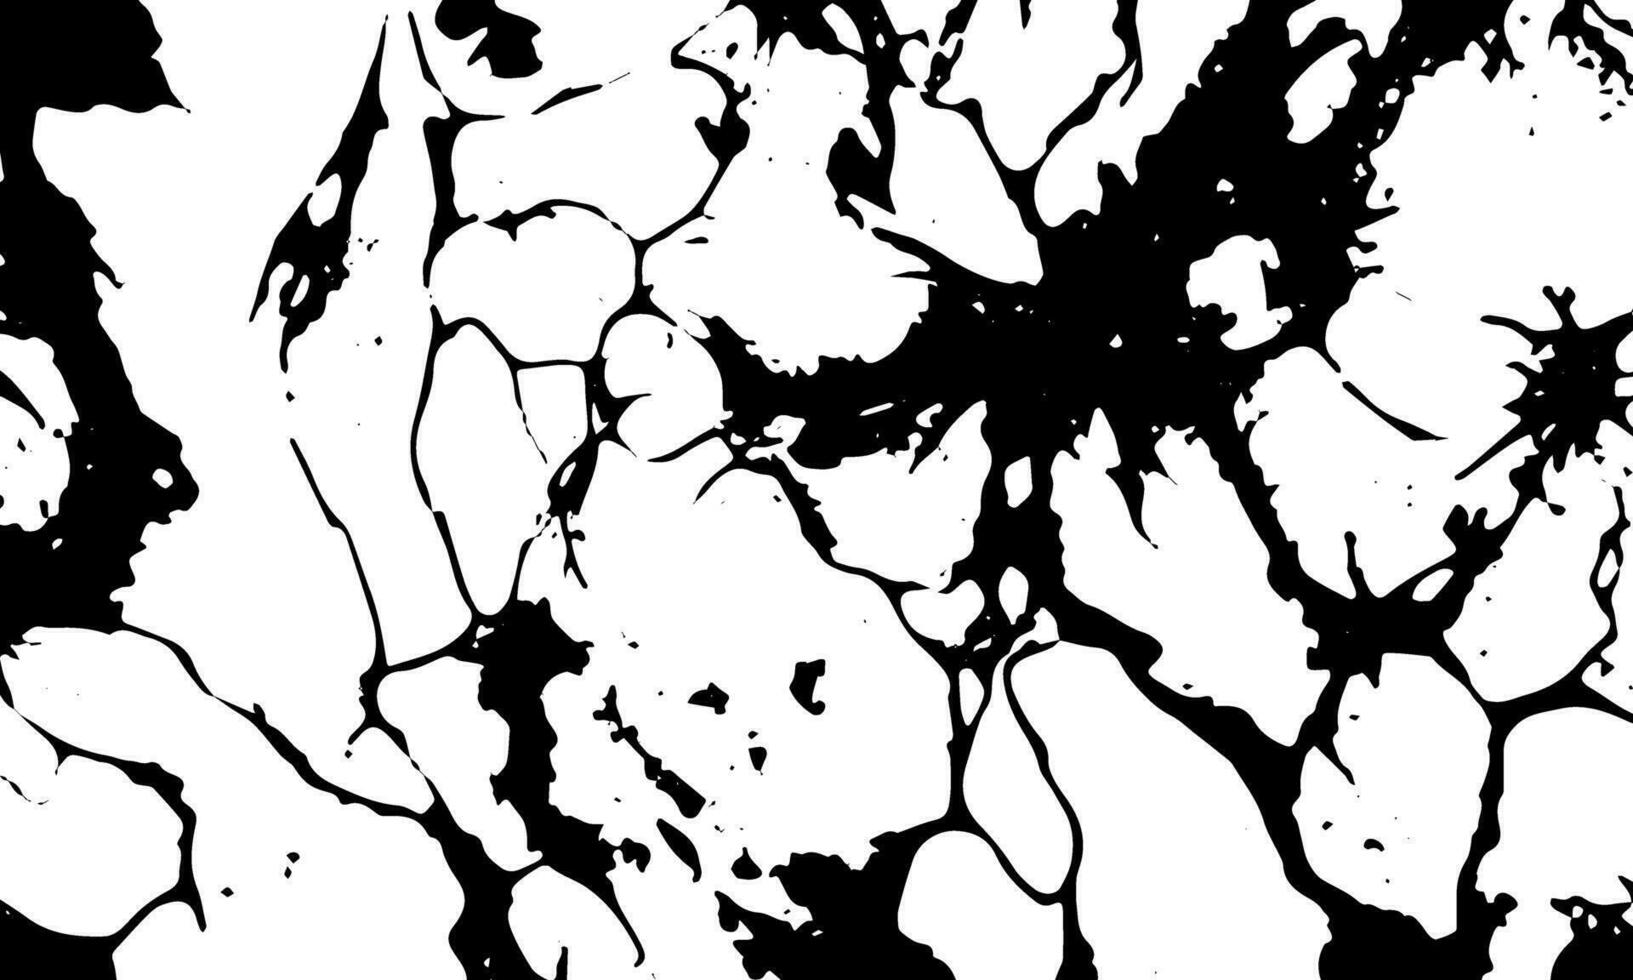 grunge détaillé noir abstrait texture. vecteur